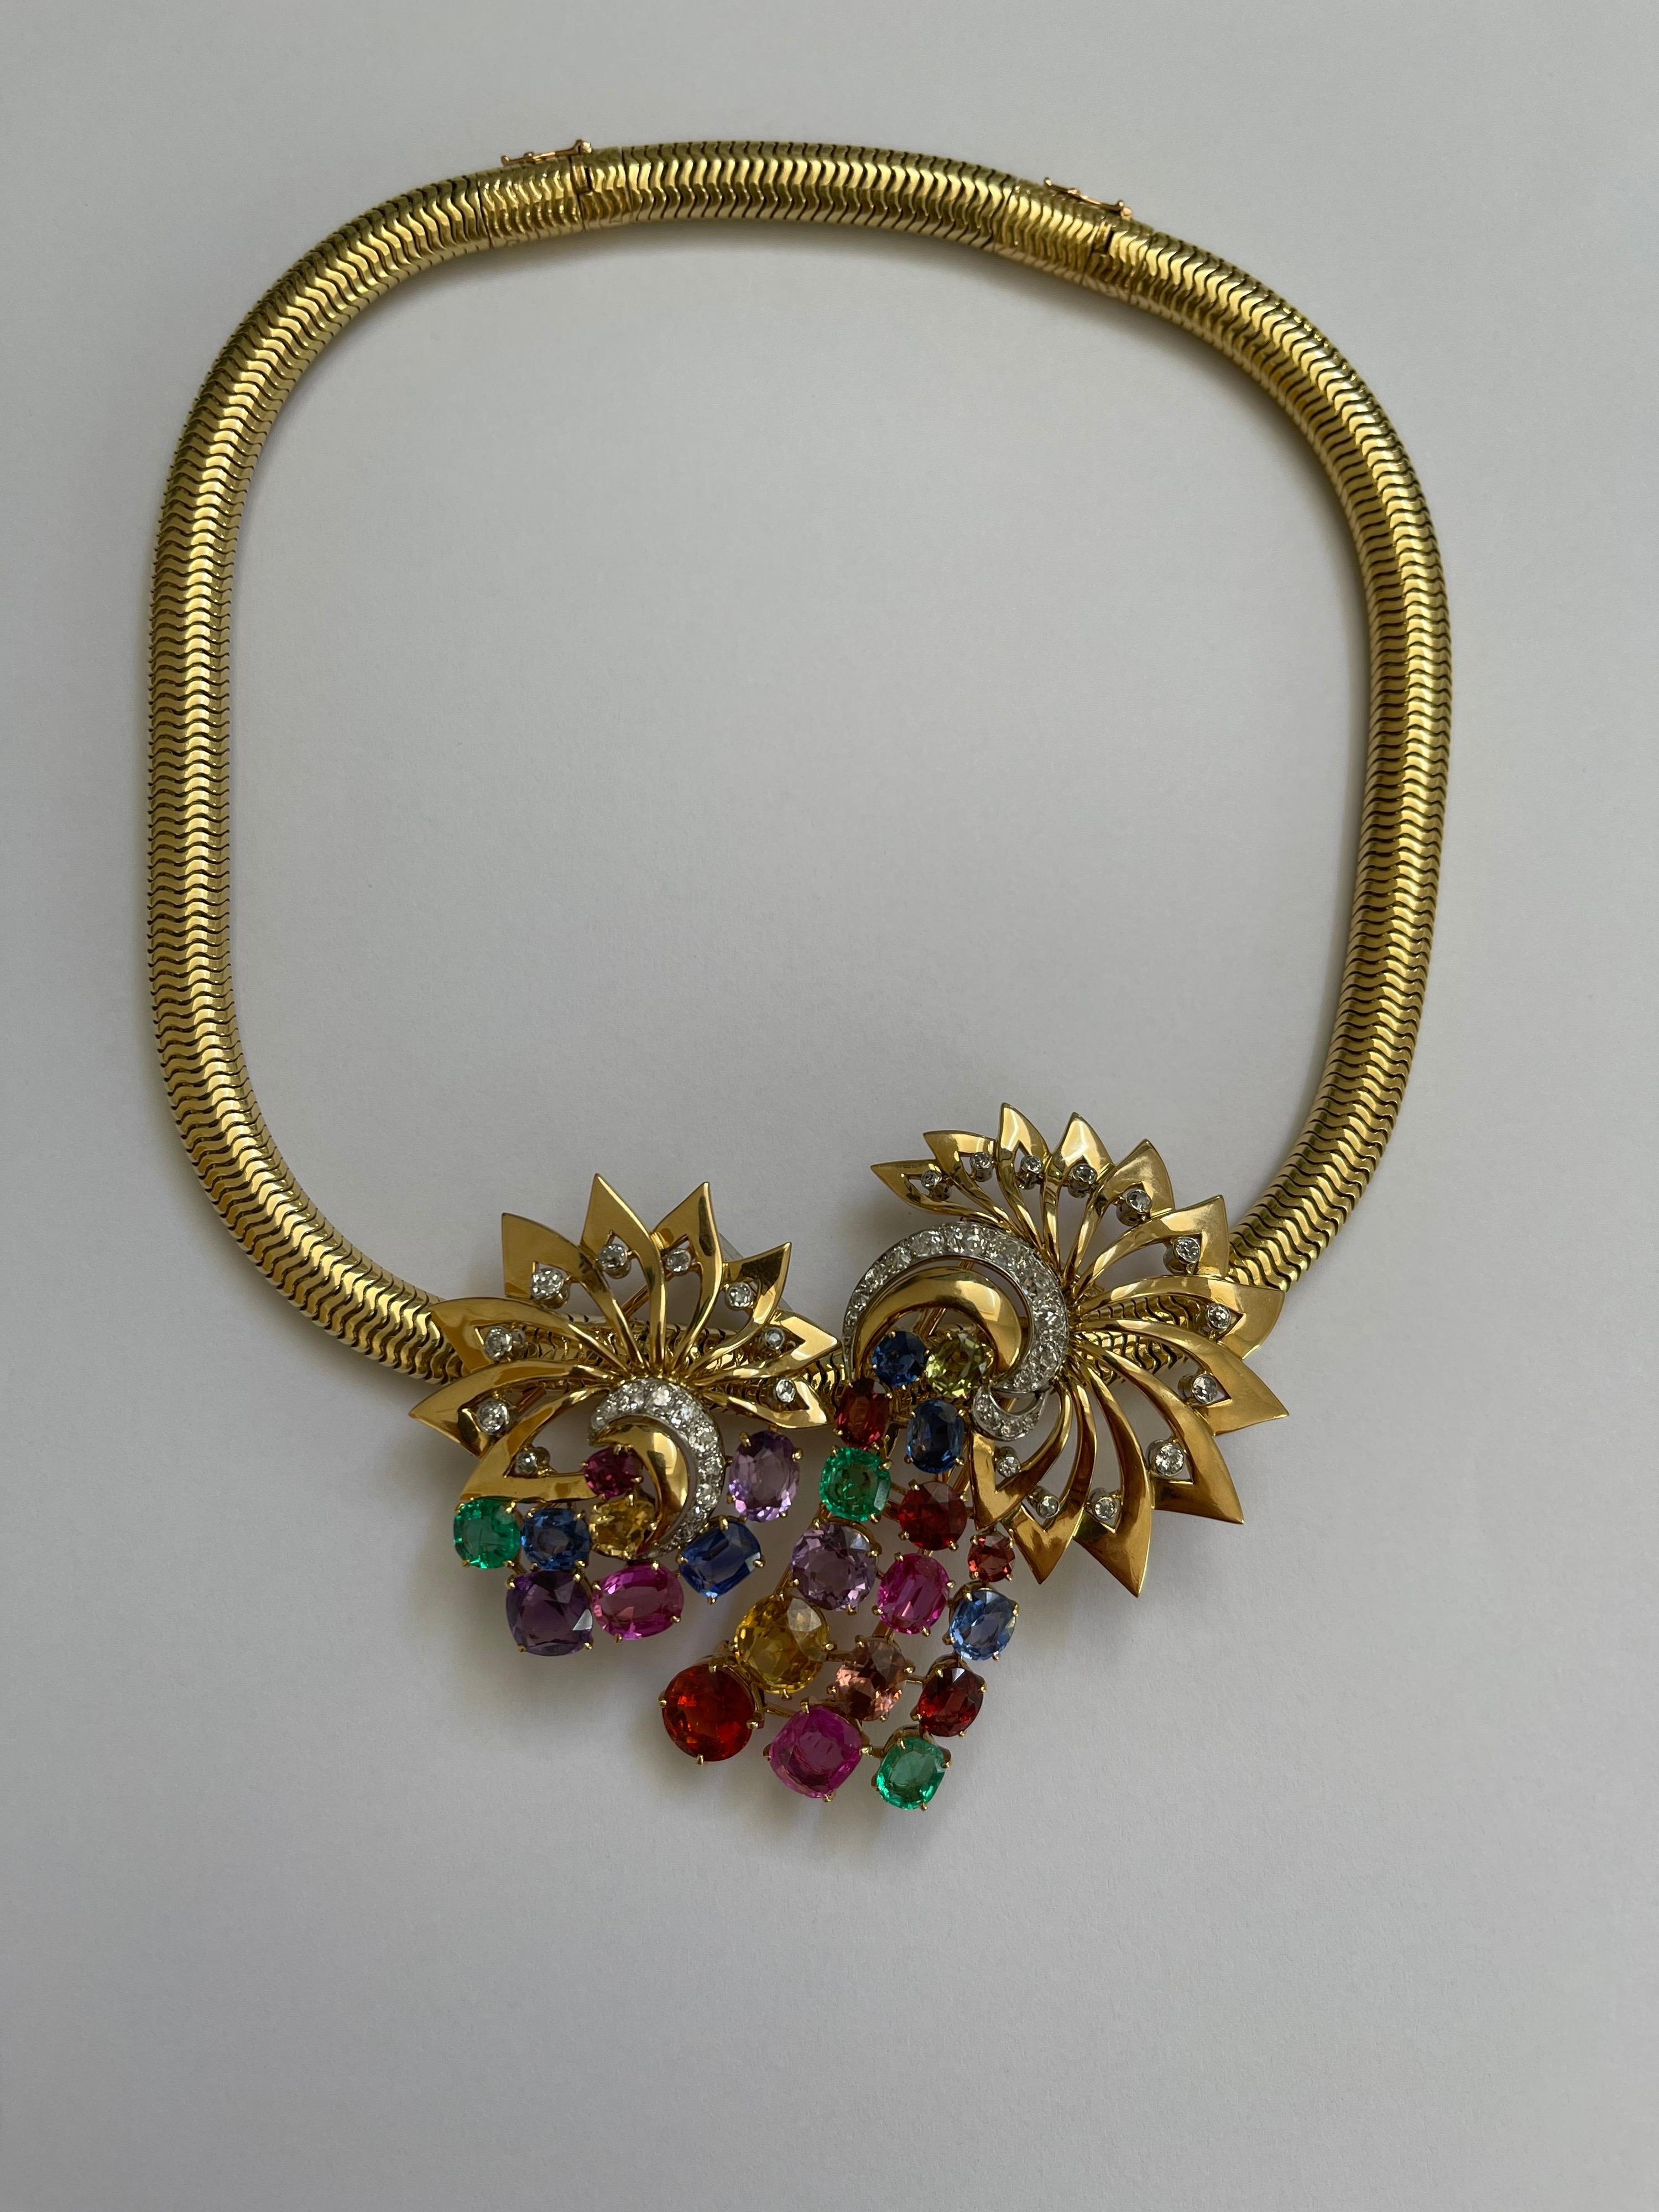 gandaberunda necklace